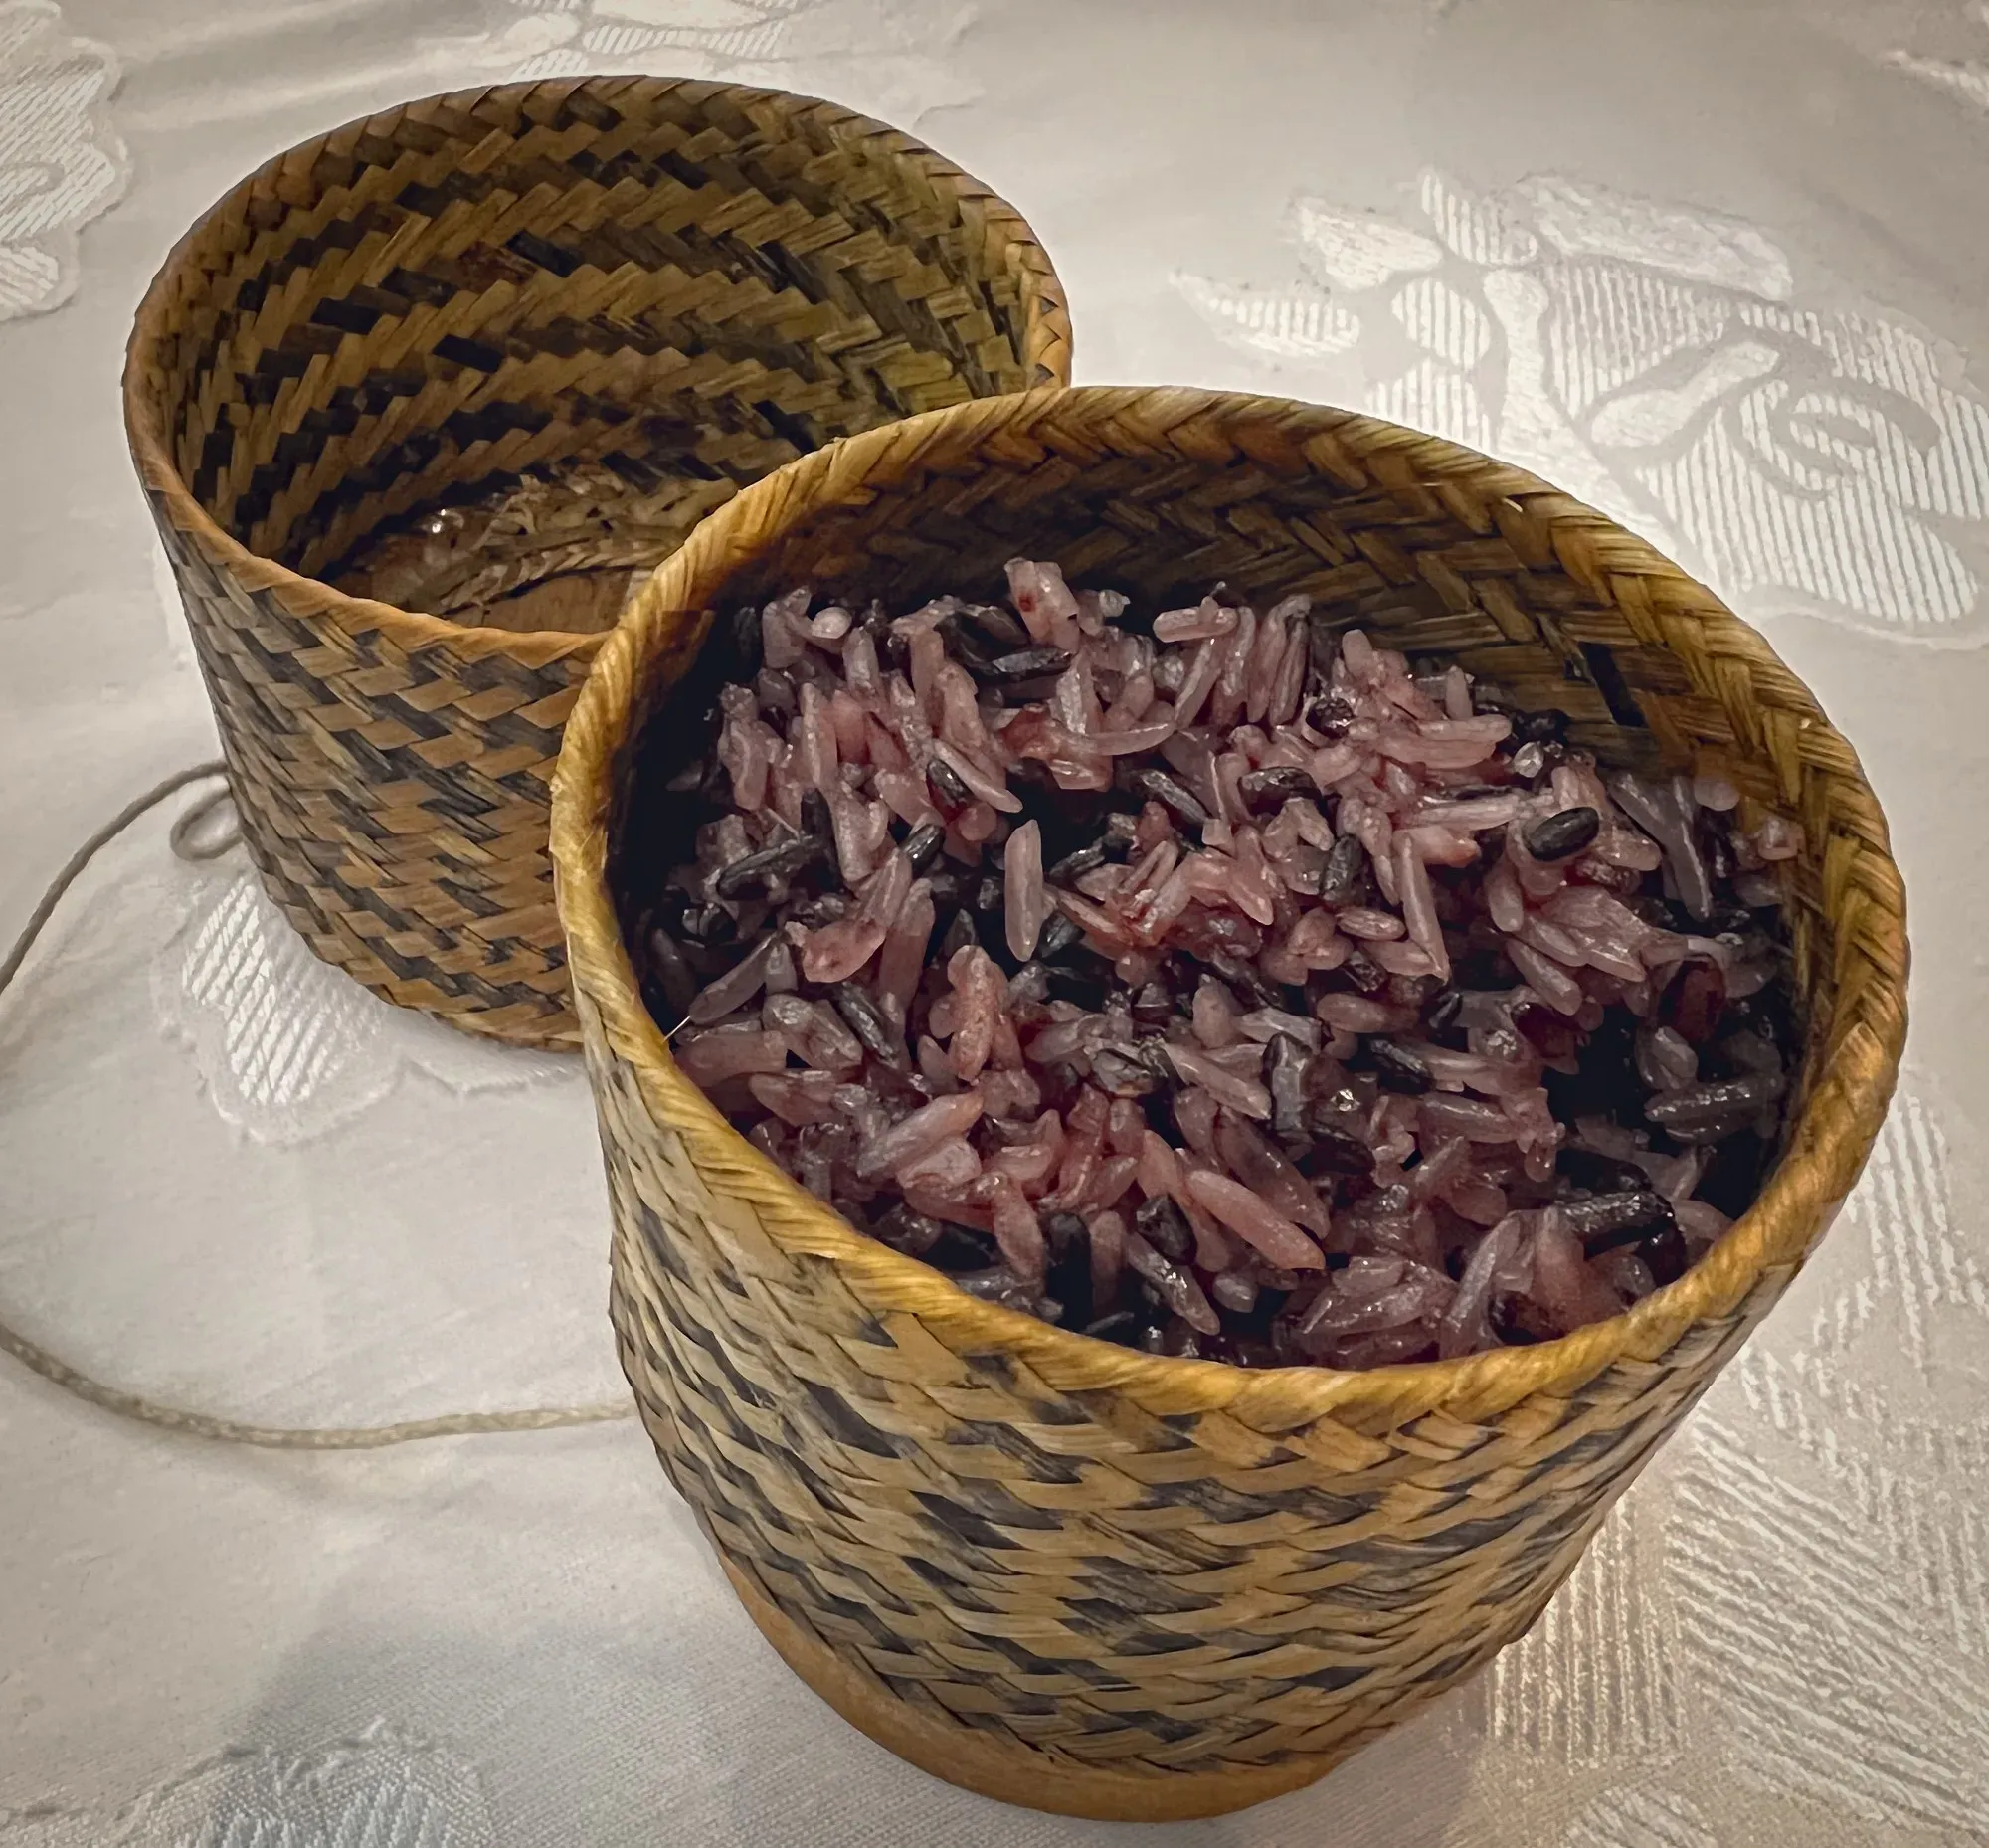 Purple sticky rice.